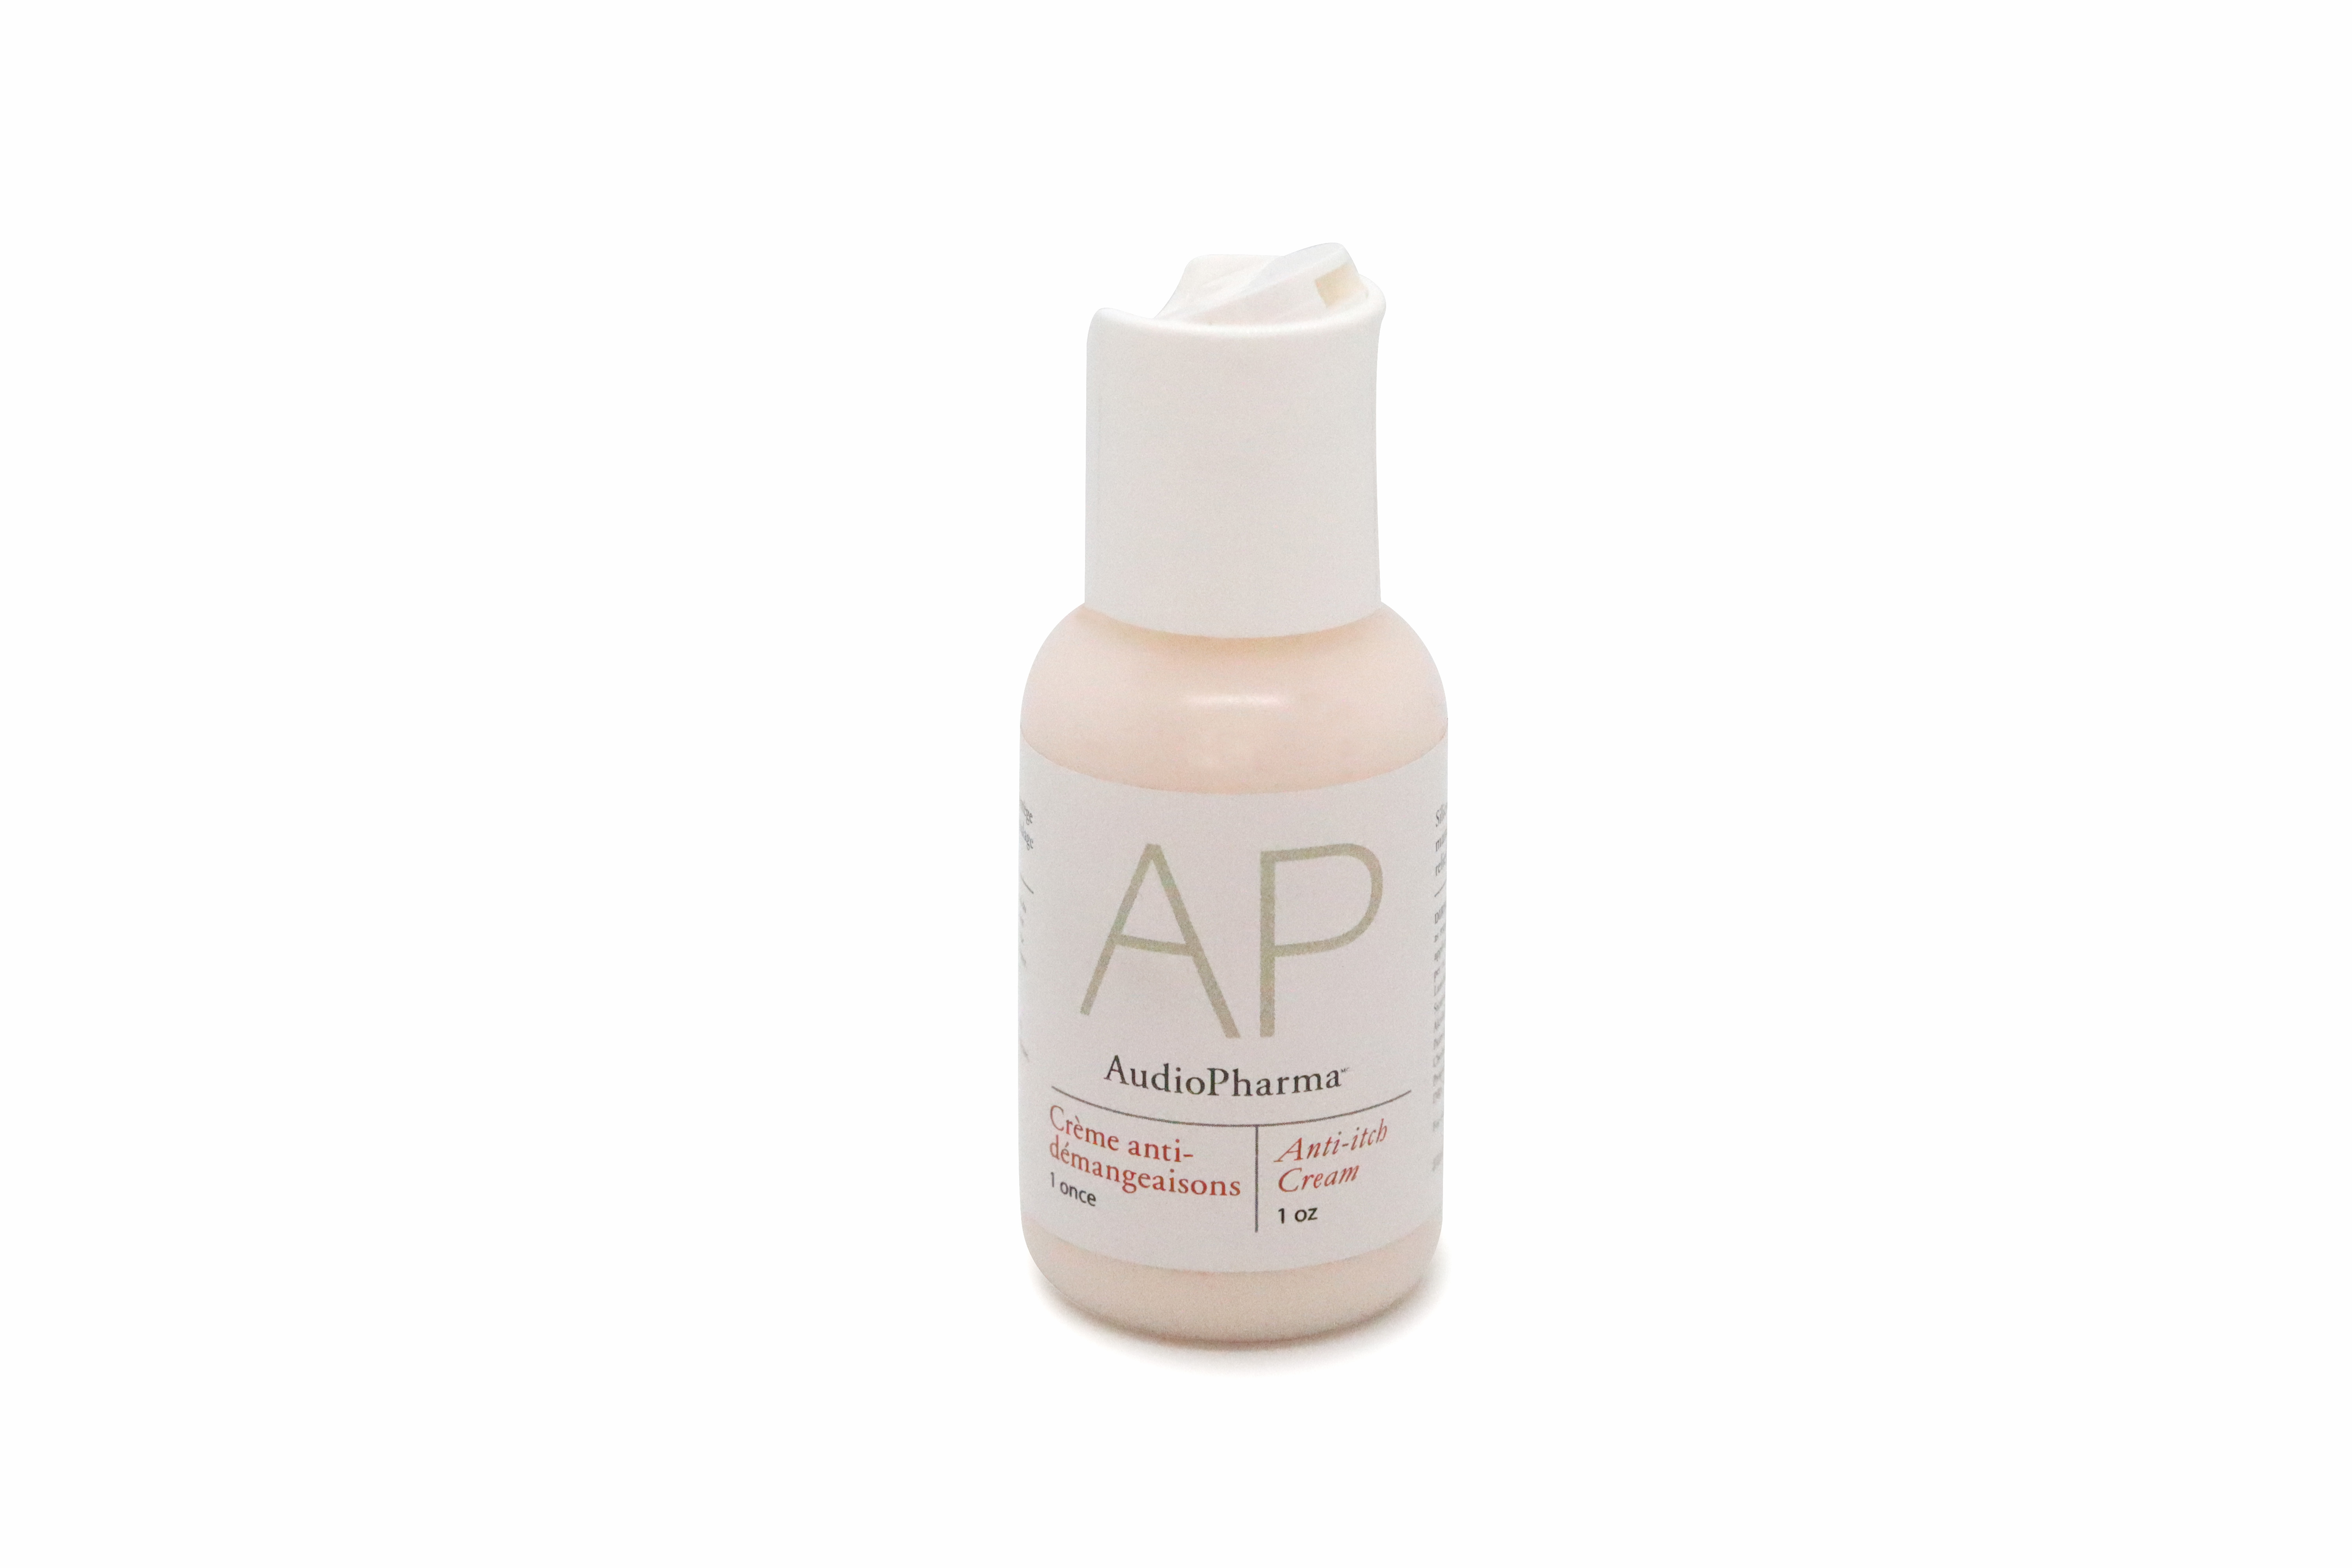 AP Anti-itch Cream